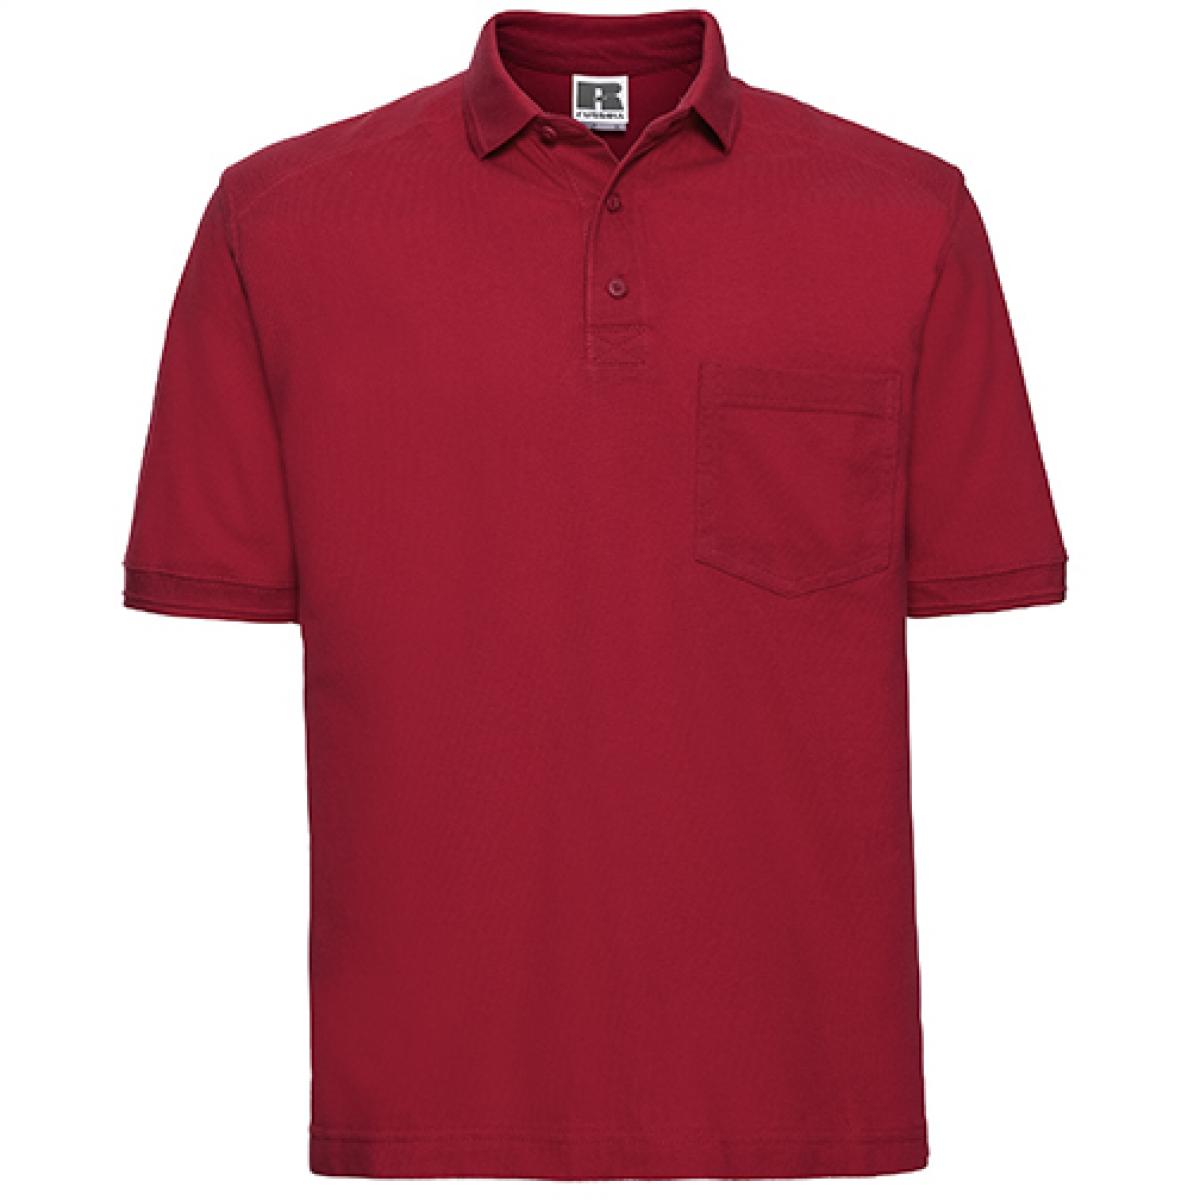 Hersteller: Russell Herstellernummer: R-011M-0 Artikelbezeichnung: Herren Workwear-Poloshirt - Waschbar bis 60 °C Farbe: Classic Red